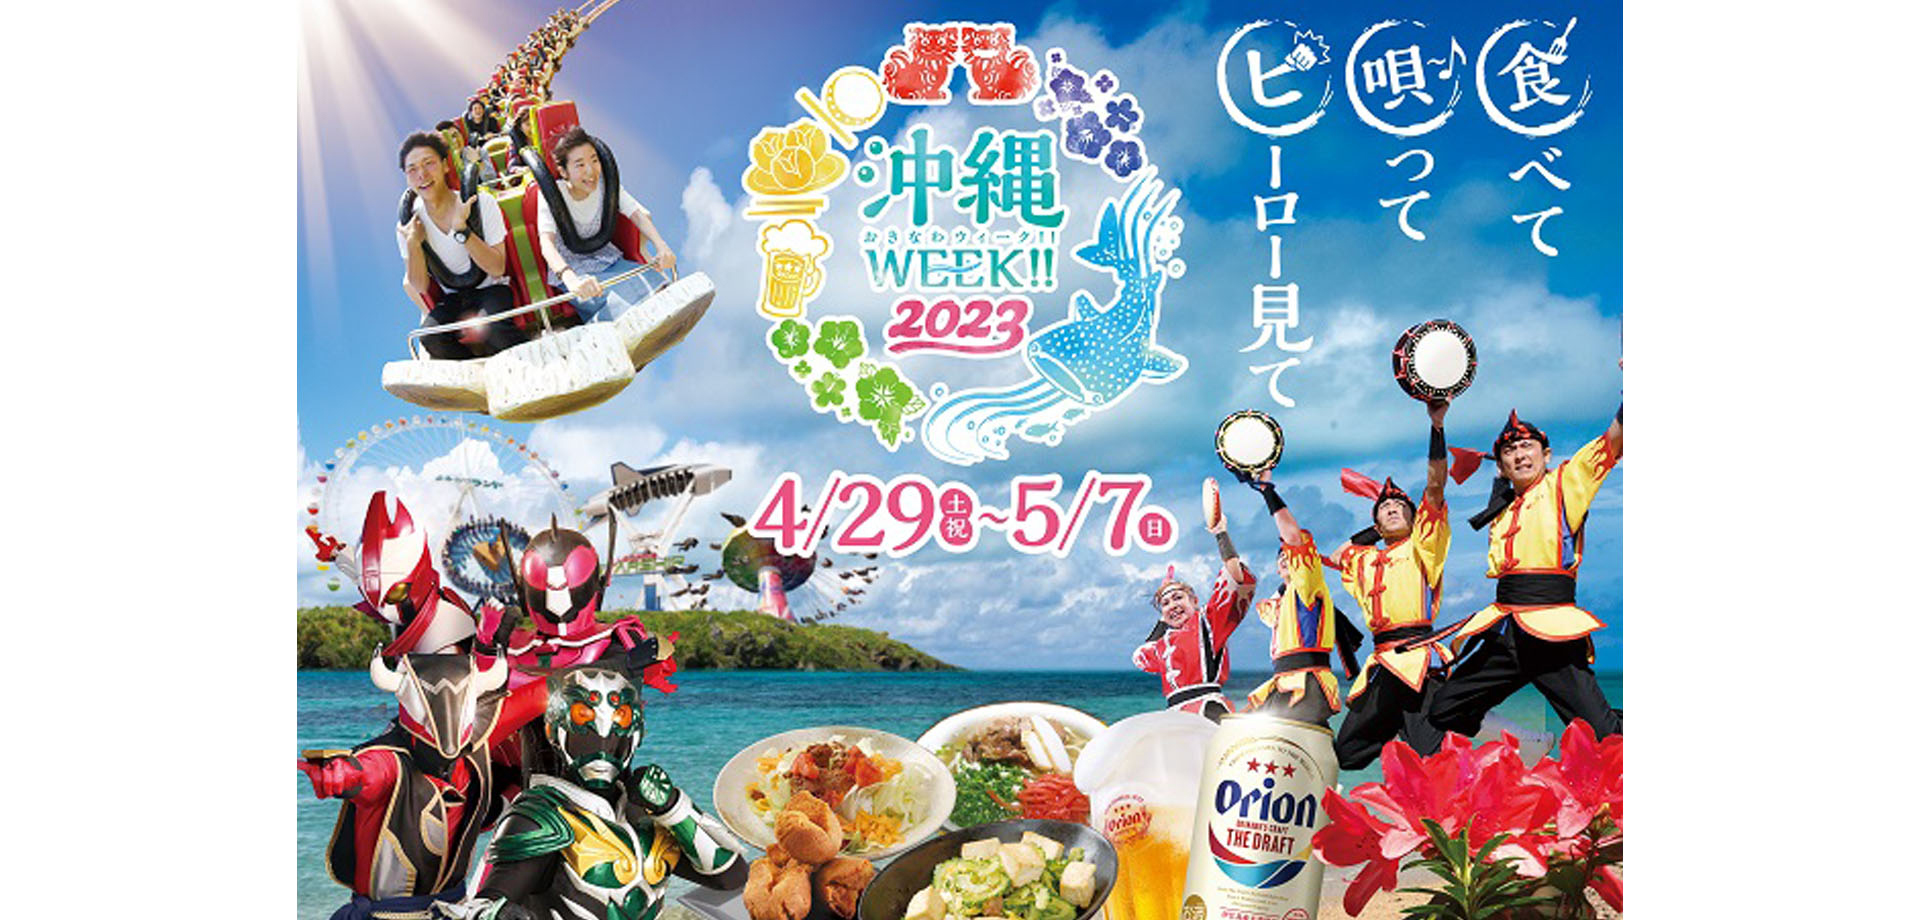 よみうりランド HANA・BIYORI 沖縄の魅力体験イベント「沖縄WEEK!!2023」